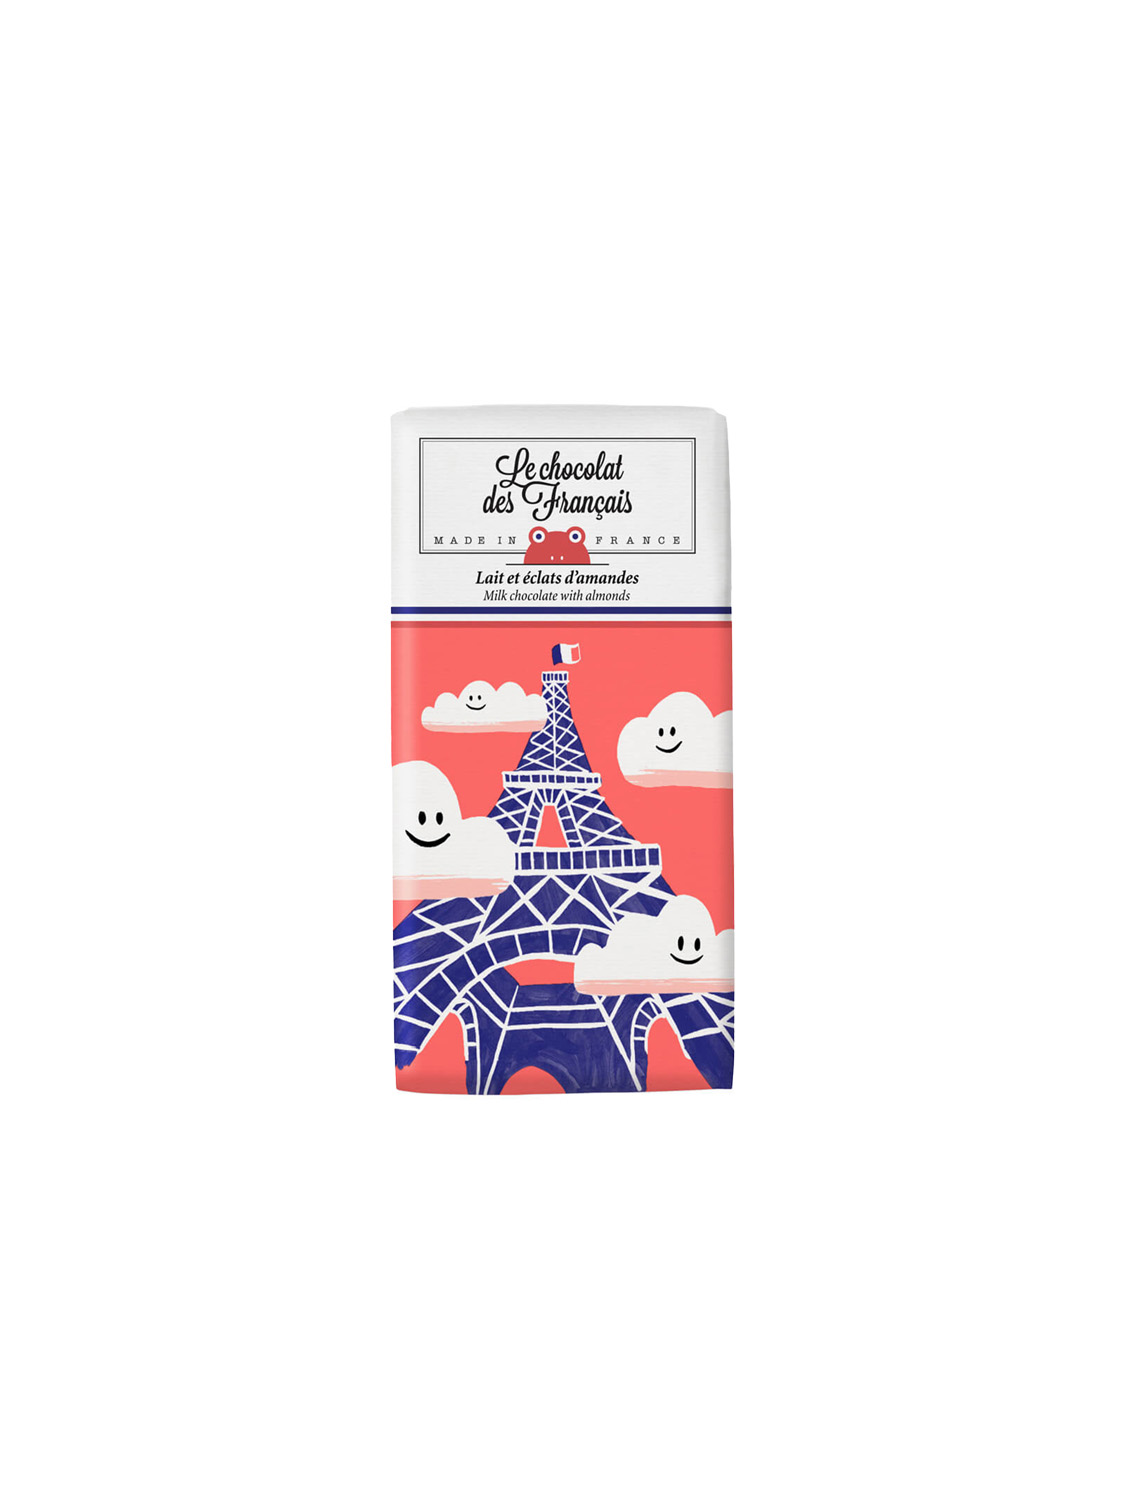 Le chocolat des  Francais  Tour Eiffel with almonds